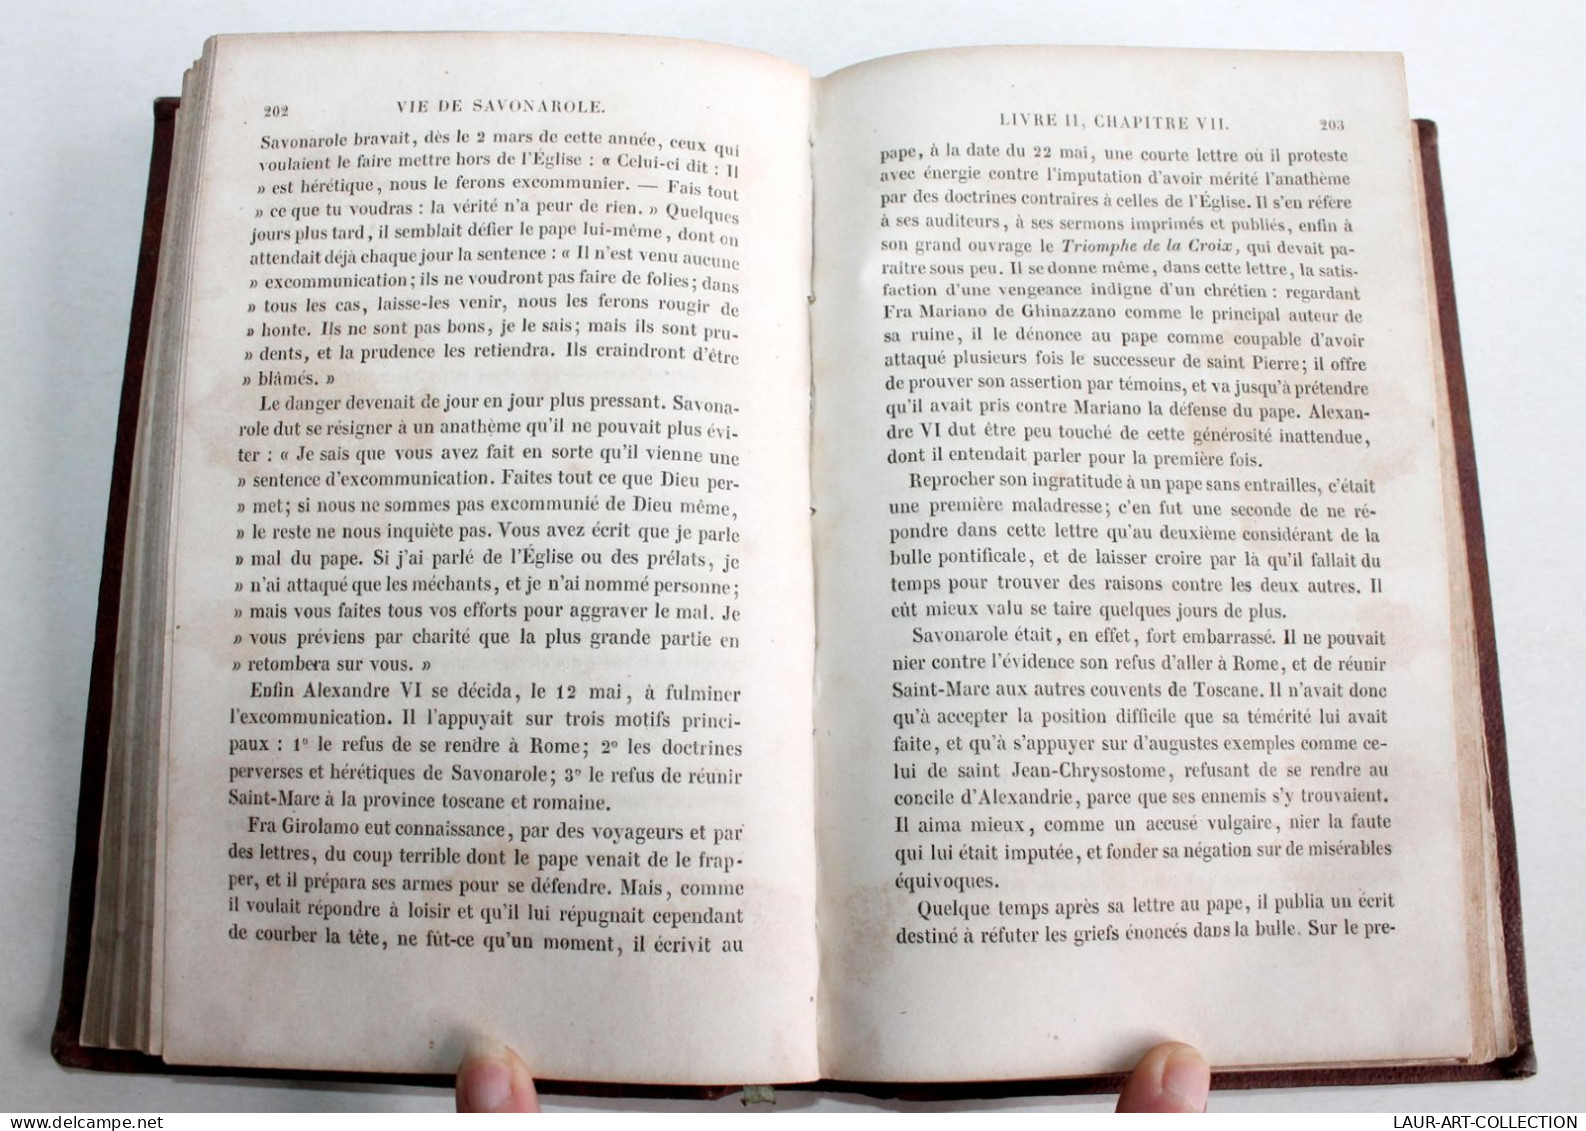 RARE DÉDICACÉ! JEROME SAVONAROLE D'APRES LES DOCUMENTS ORIGINAUX De PERRENS 1856 / ANCIEN LIVRE XIXe SIECLE (2603.6) - Signierte Bücher